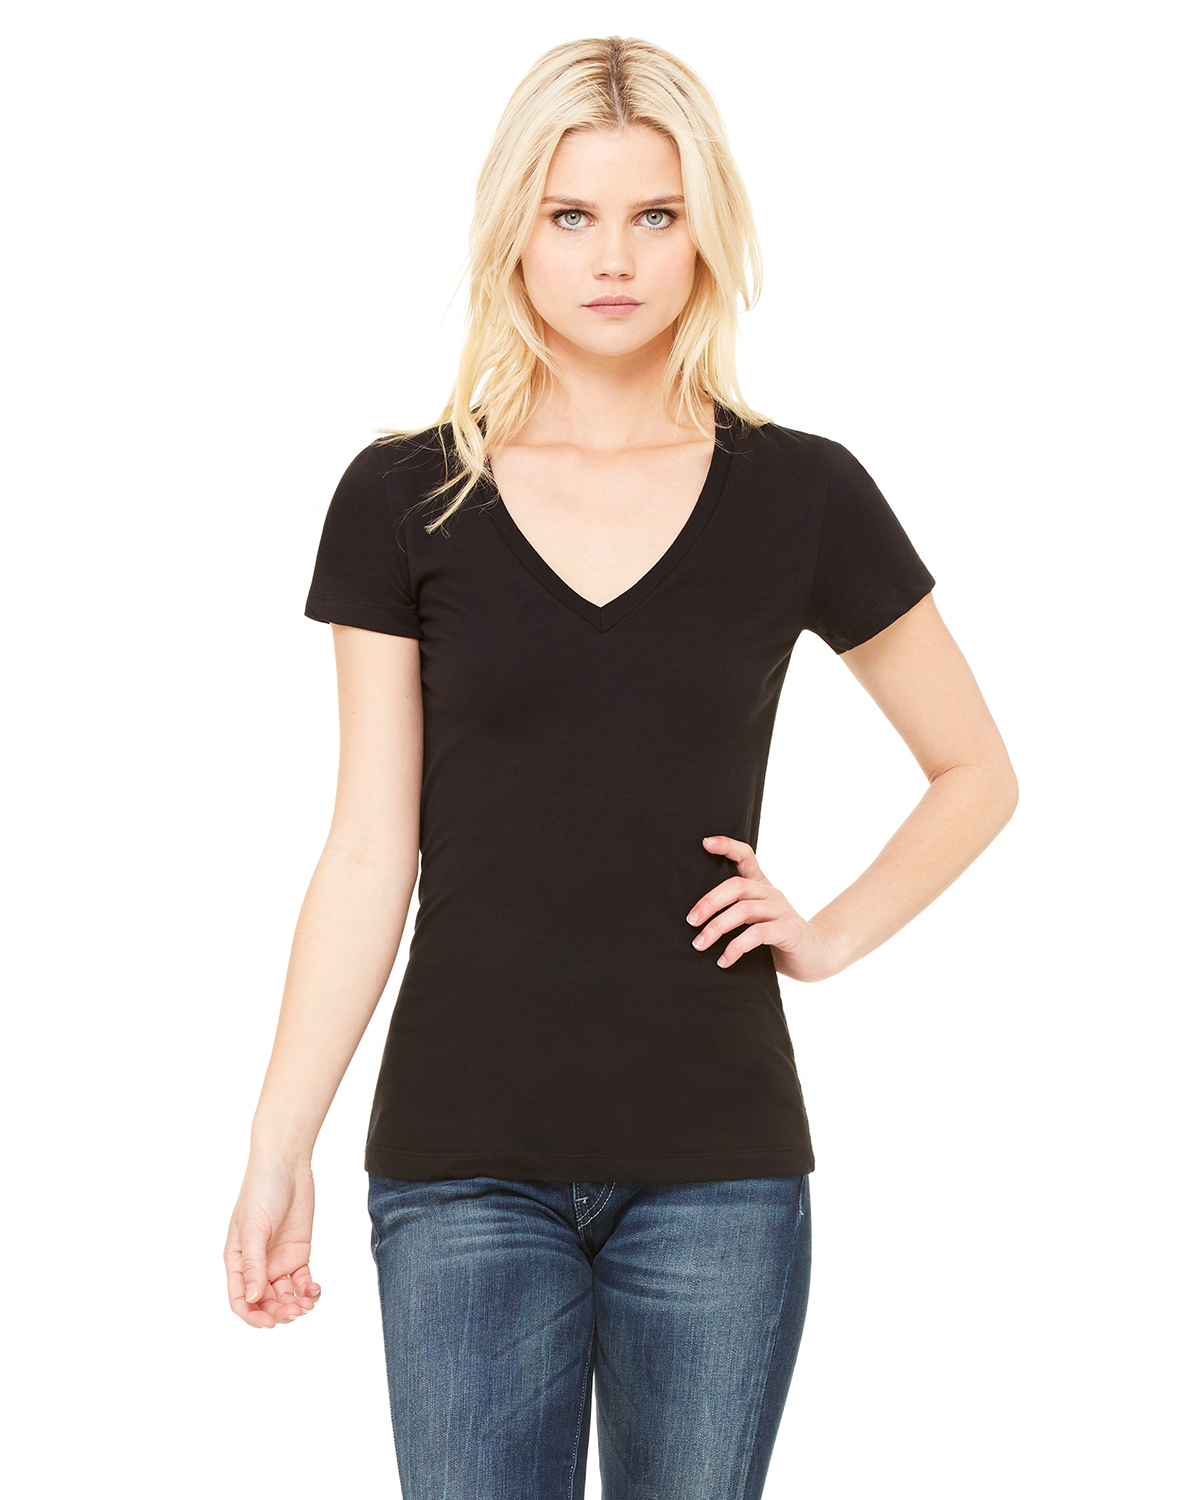 Bella + Canvas 6035 - Women's Deep V-Neck Jersey Tee $5.64 - T-Shirts